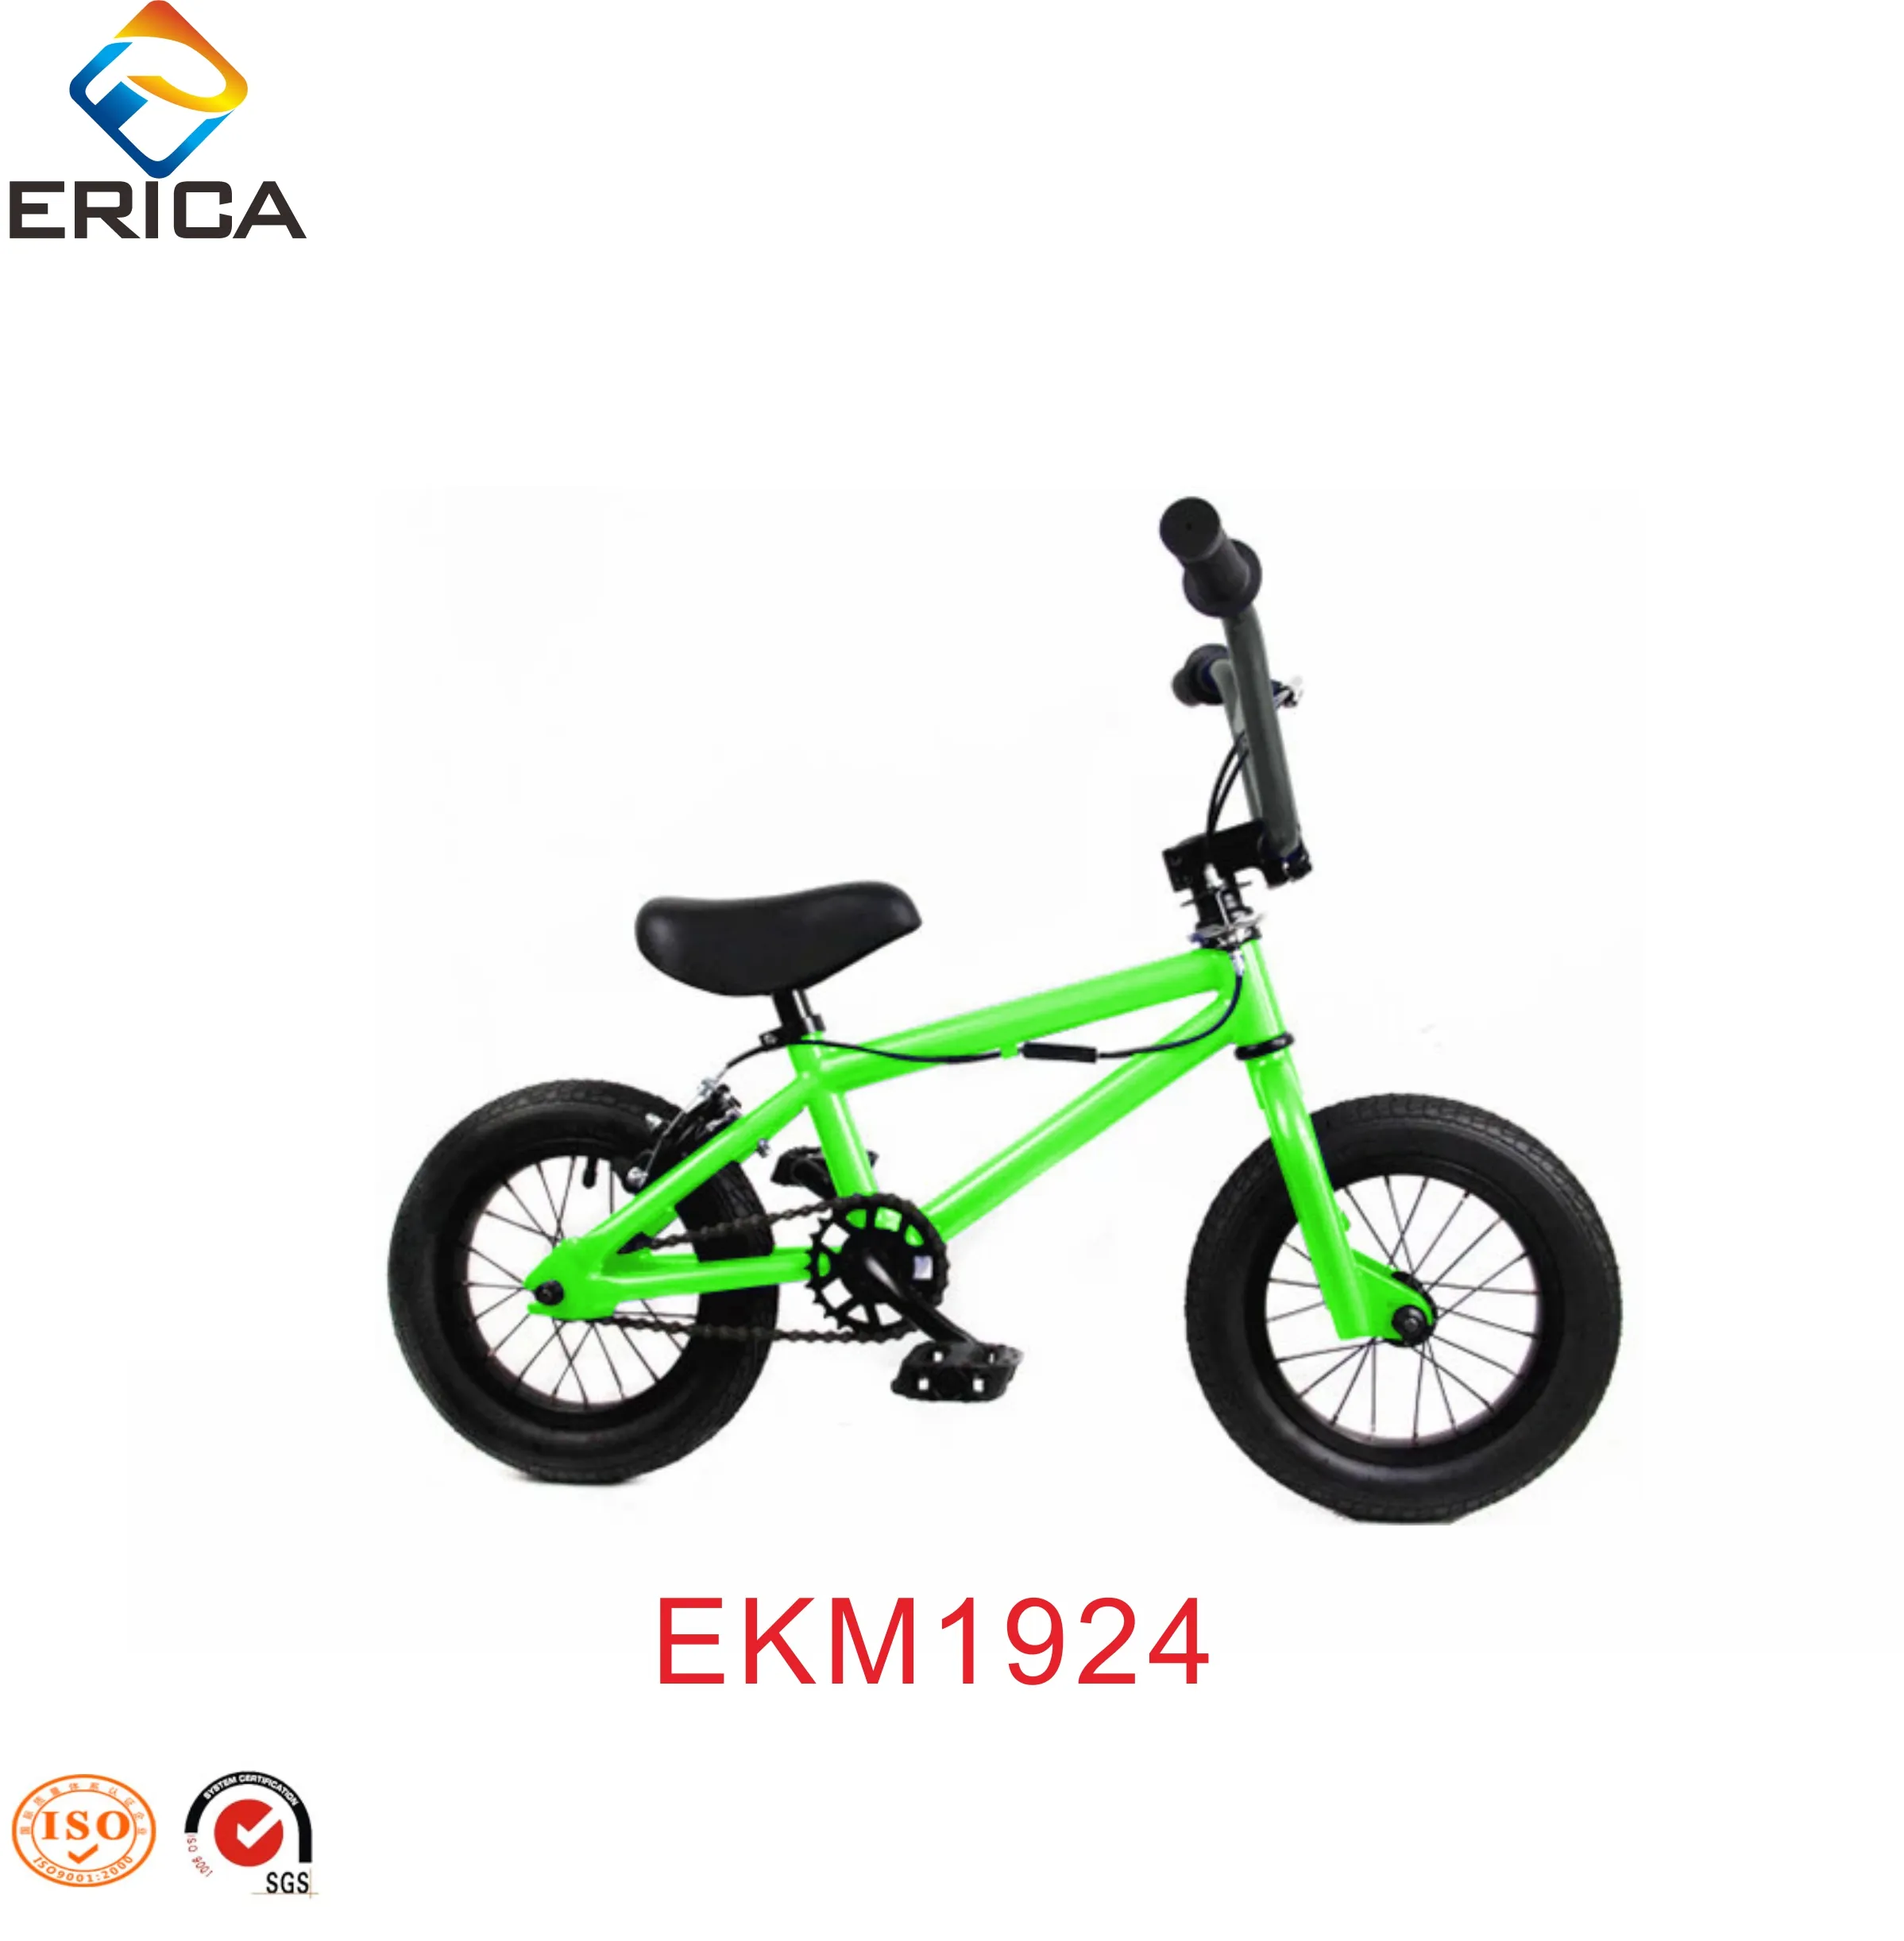 Commercio all'ingrosso Bici BMX 12 Pollici In Acciaio Al Carbonio Per Bambini A Buon Mercato Mini BMX Bicicletta